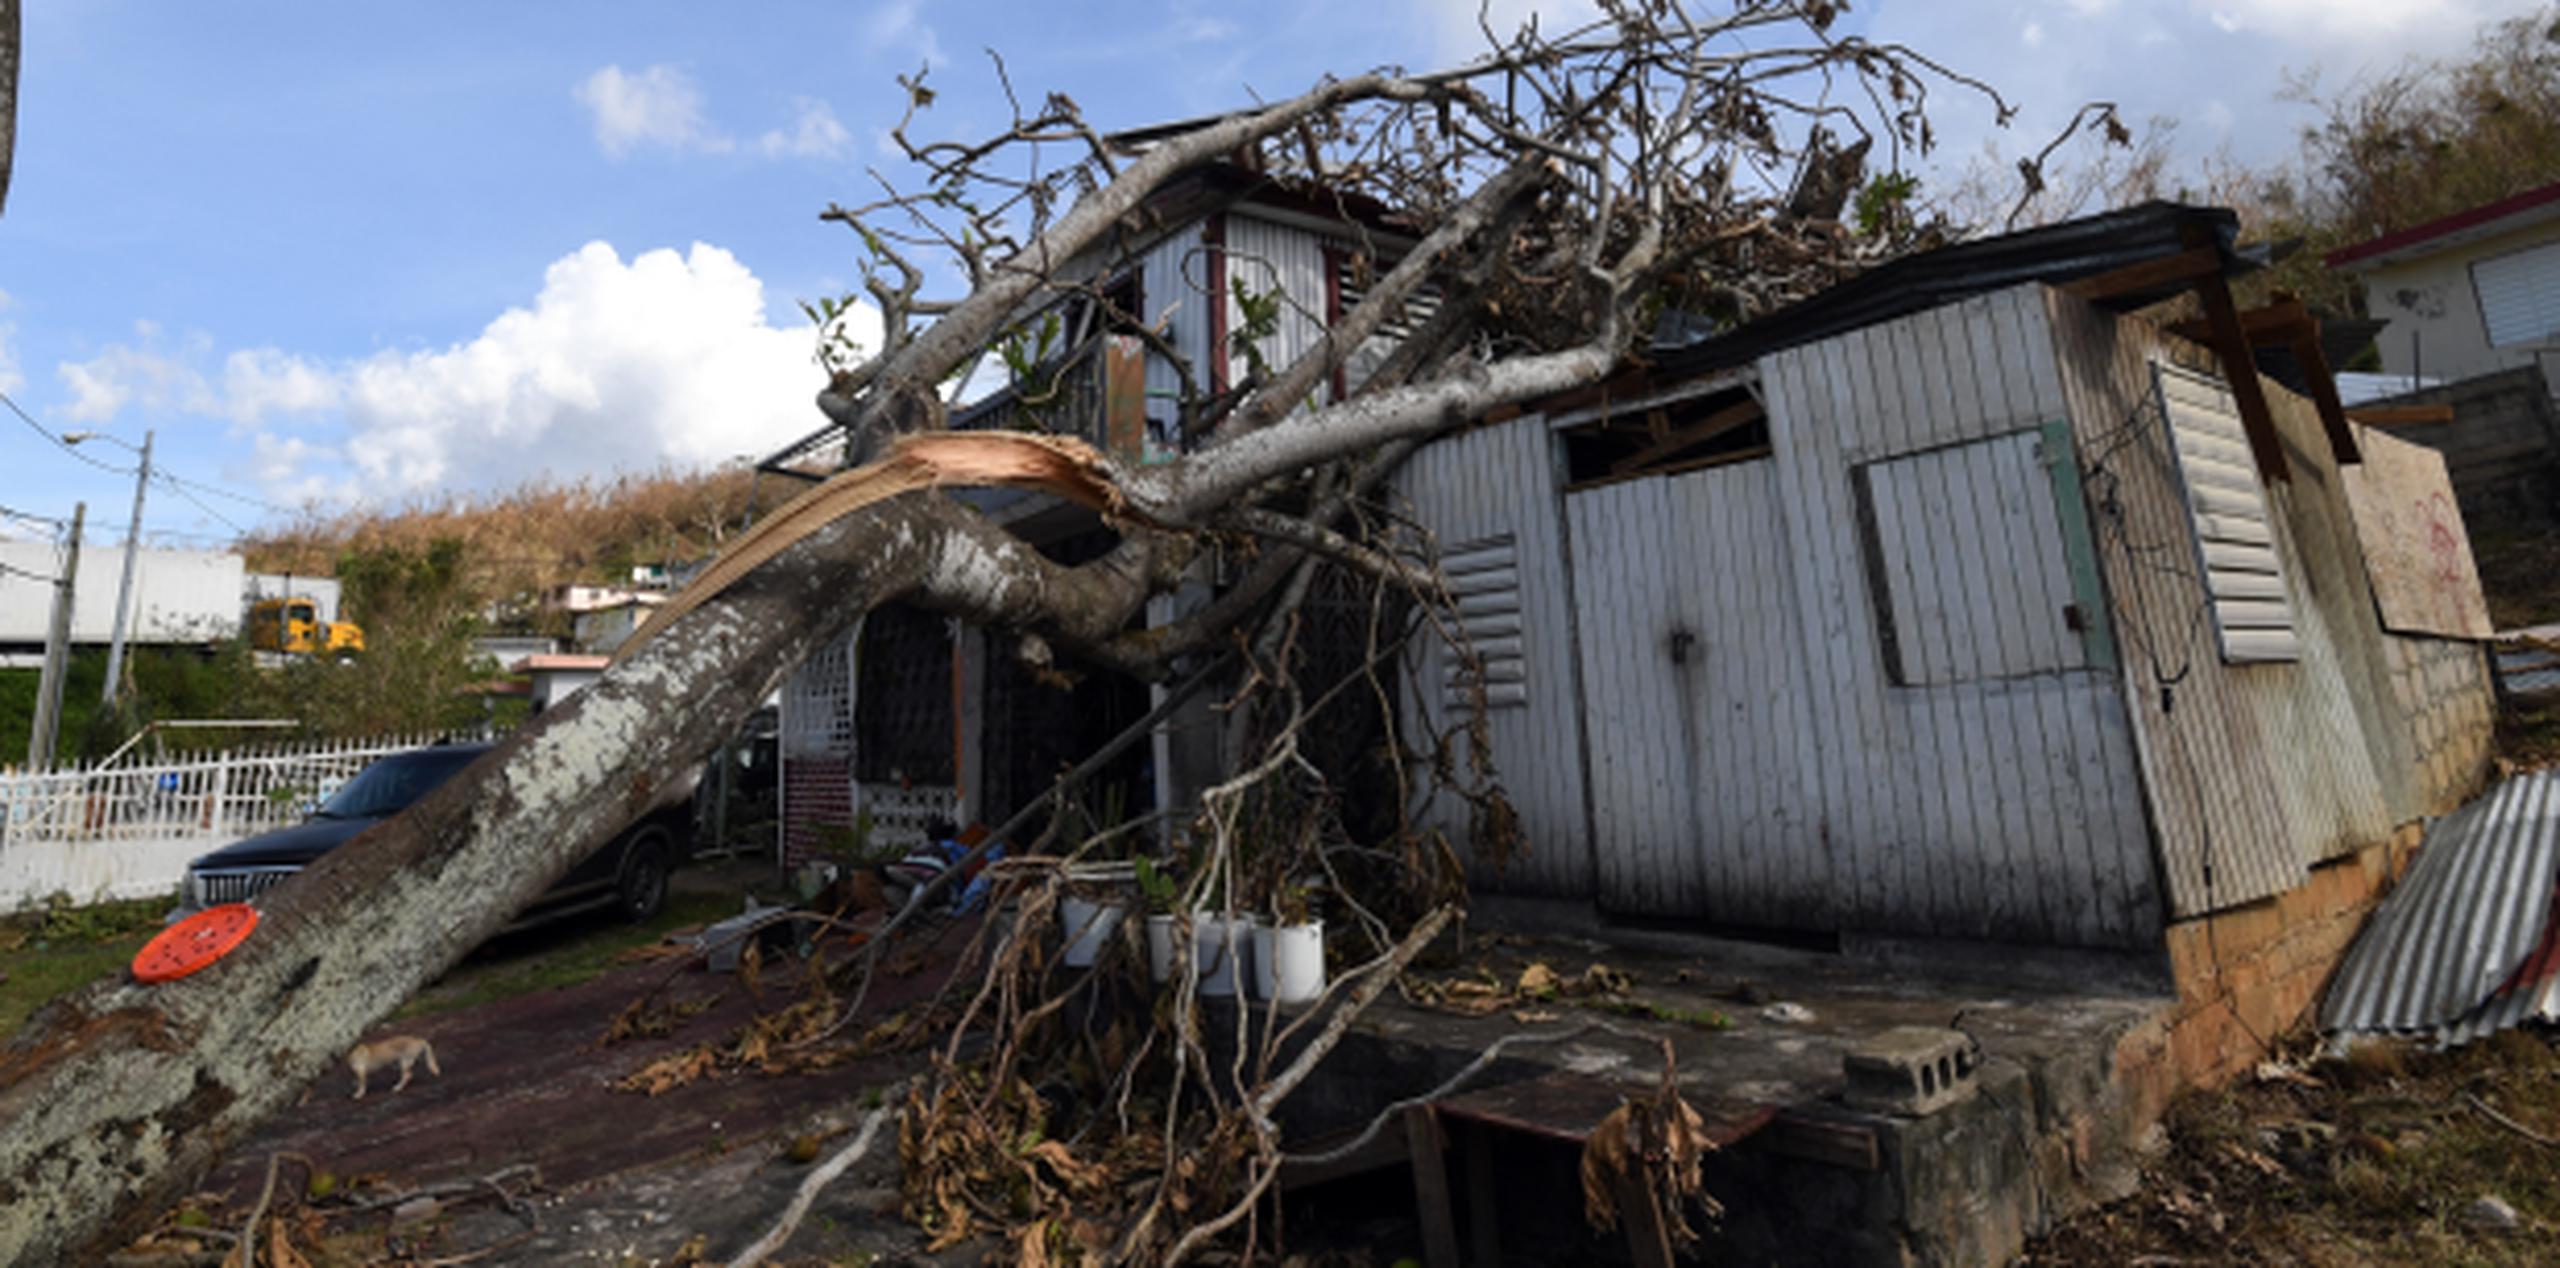 Murray decidió ayudar a Puerto Rico, donde nació, al ser impactado por las imágenes que veía, como podría ser esta casa destruida por el huracán María en Barceloneta. (andre.kang@gfrmedia.com)
